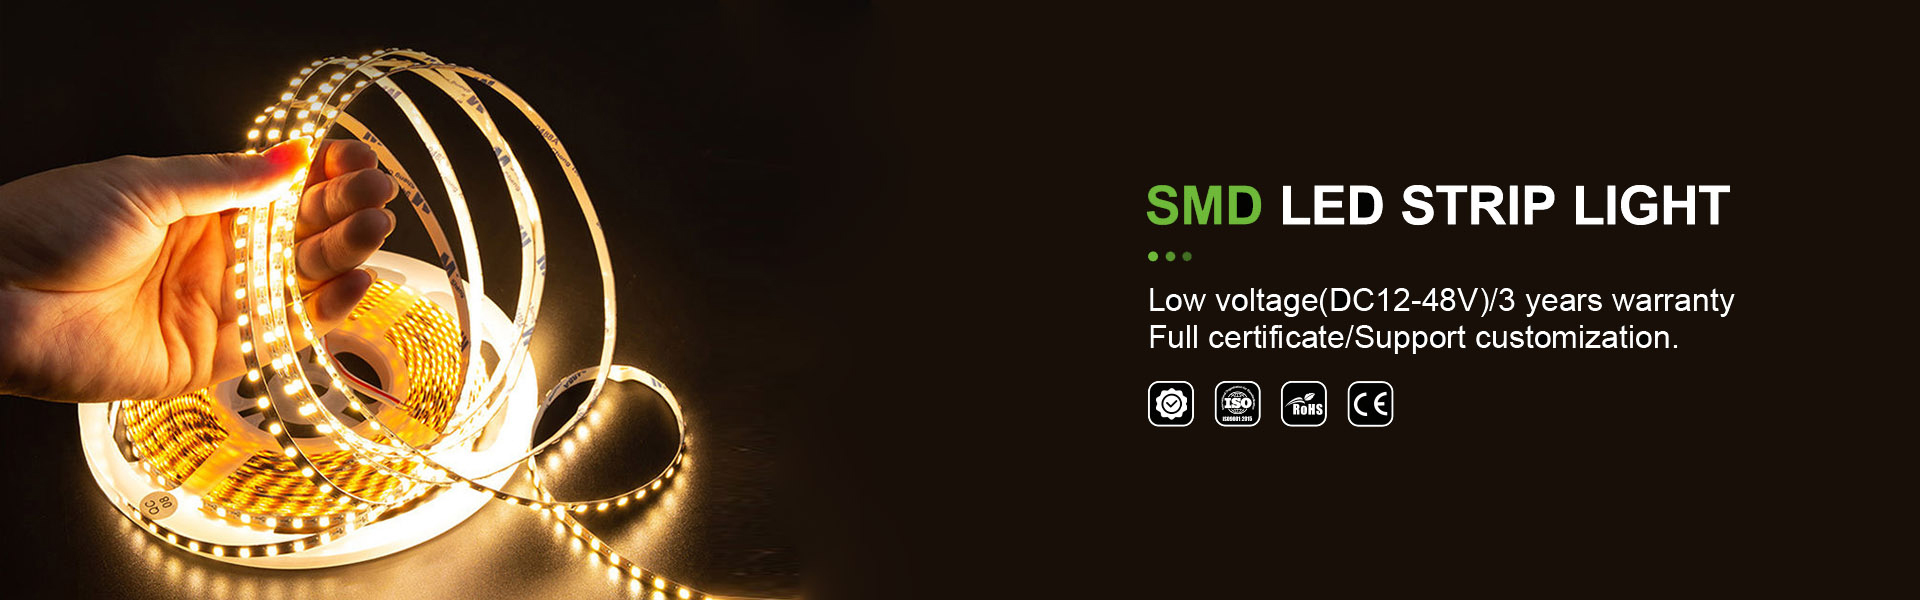 iluminare cu bandă cu LED, lumină deneon, iluminare cu bandă de cob,AWS (SZ) Technology Company Limited